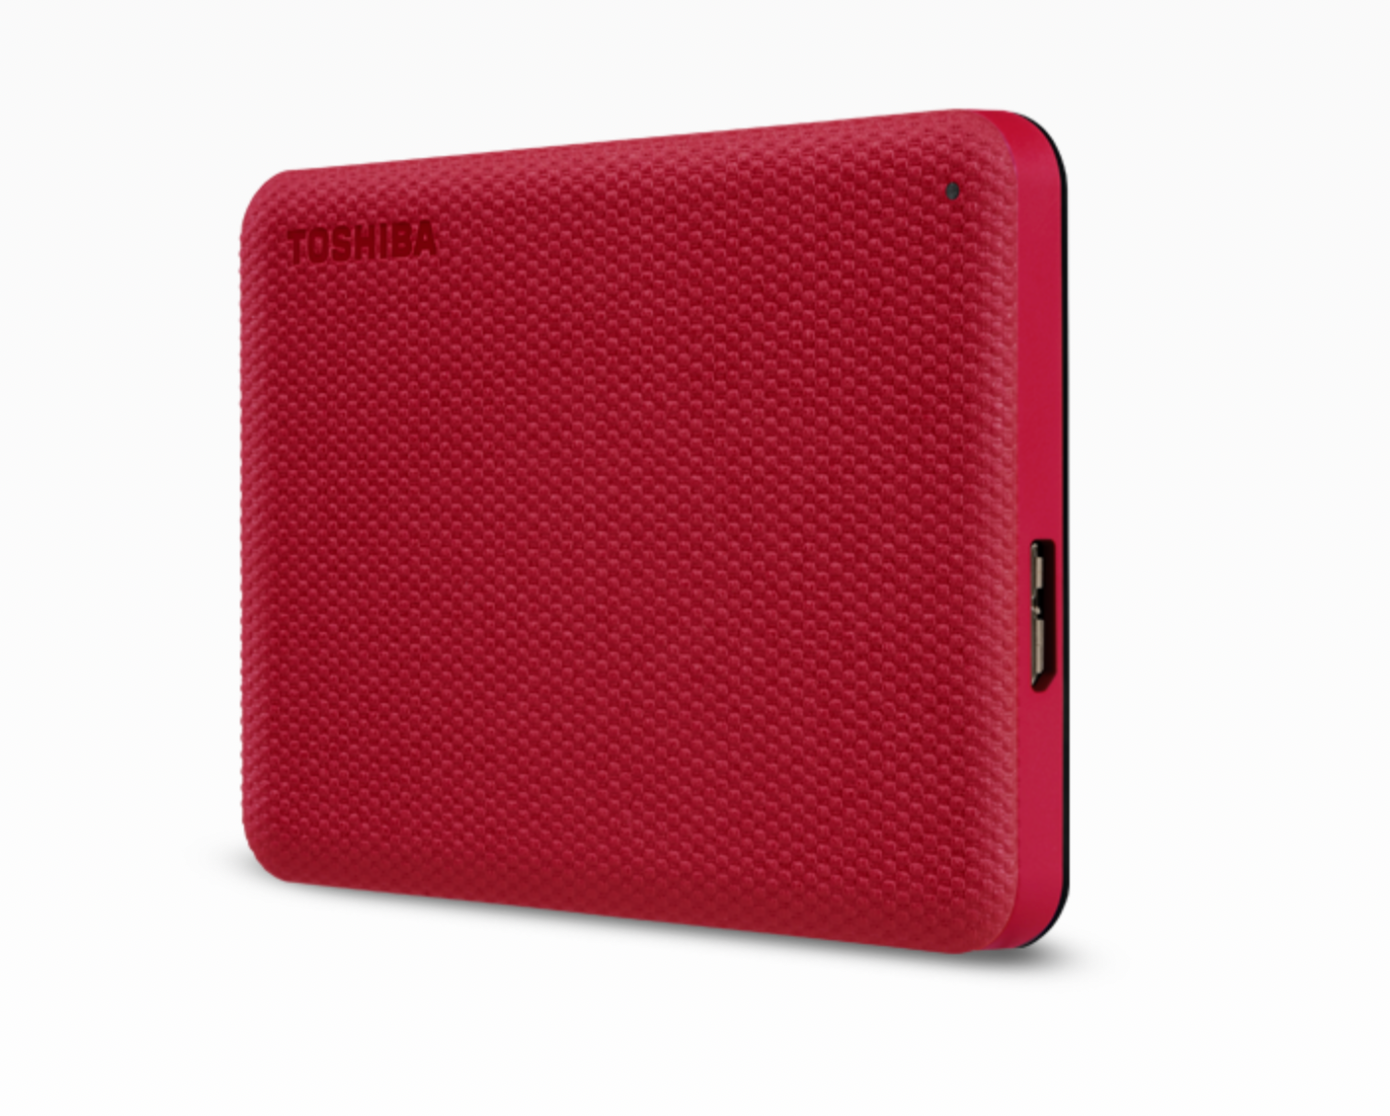 Dysk Toshiba Canvio Advanced 1TB czerwony widok na przód od prawego boku